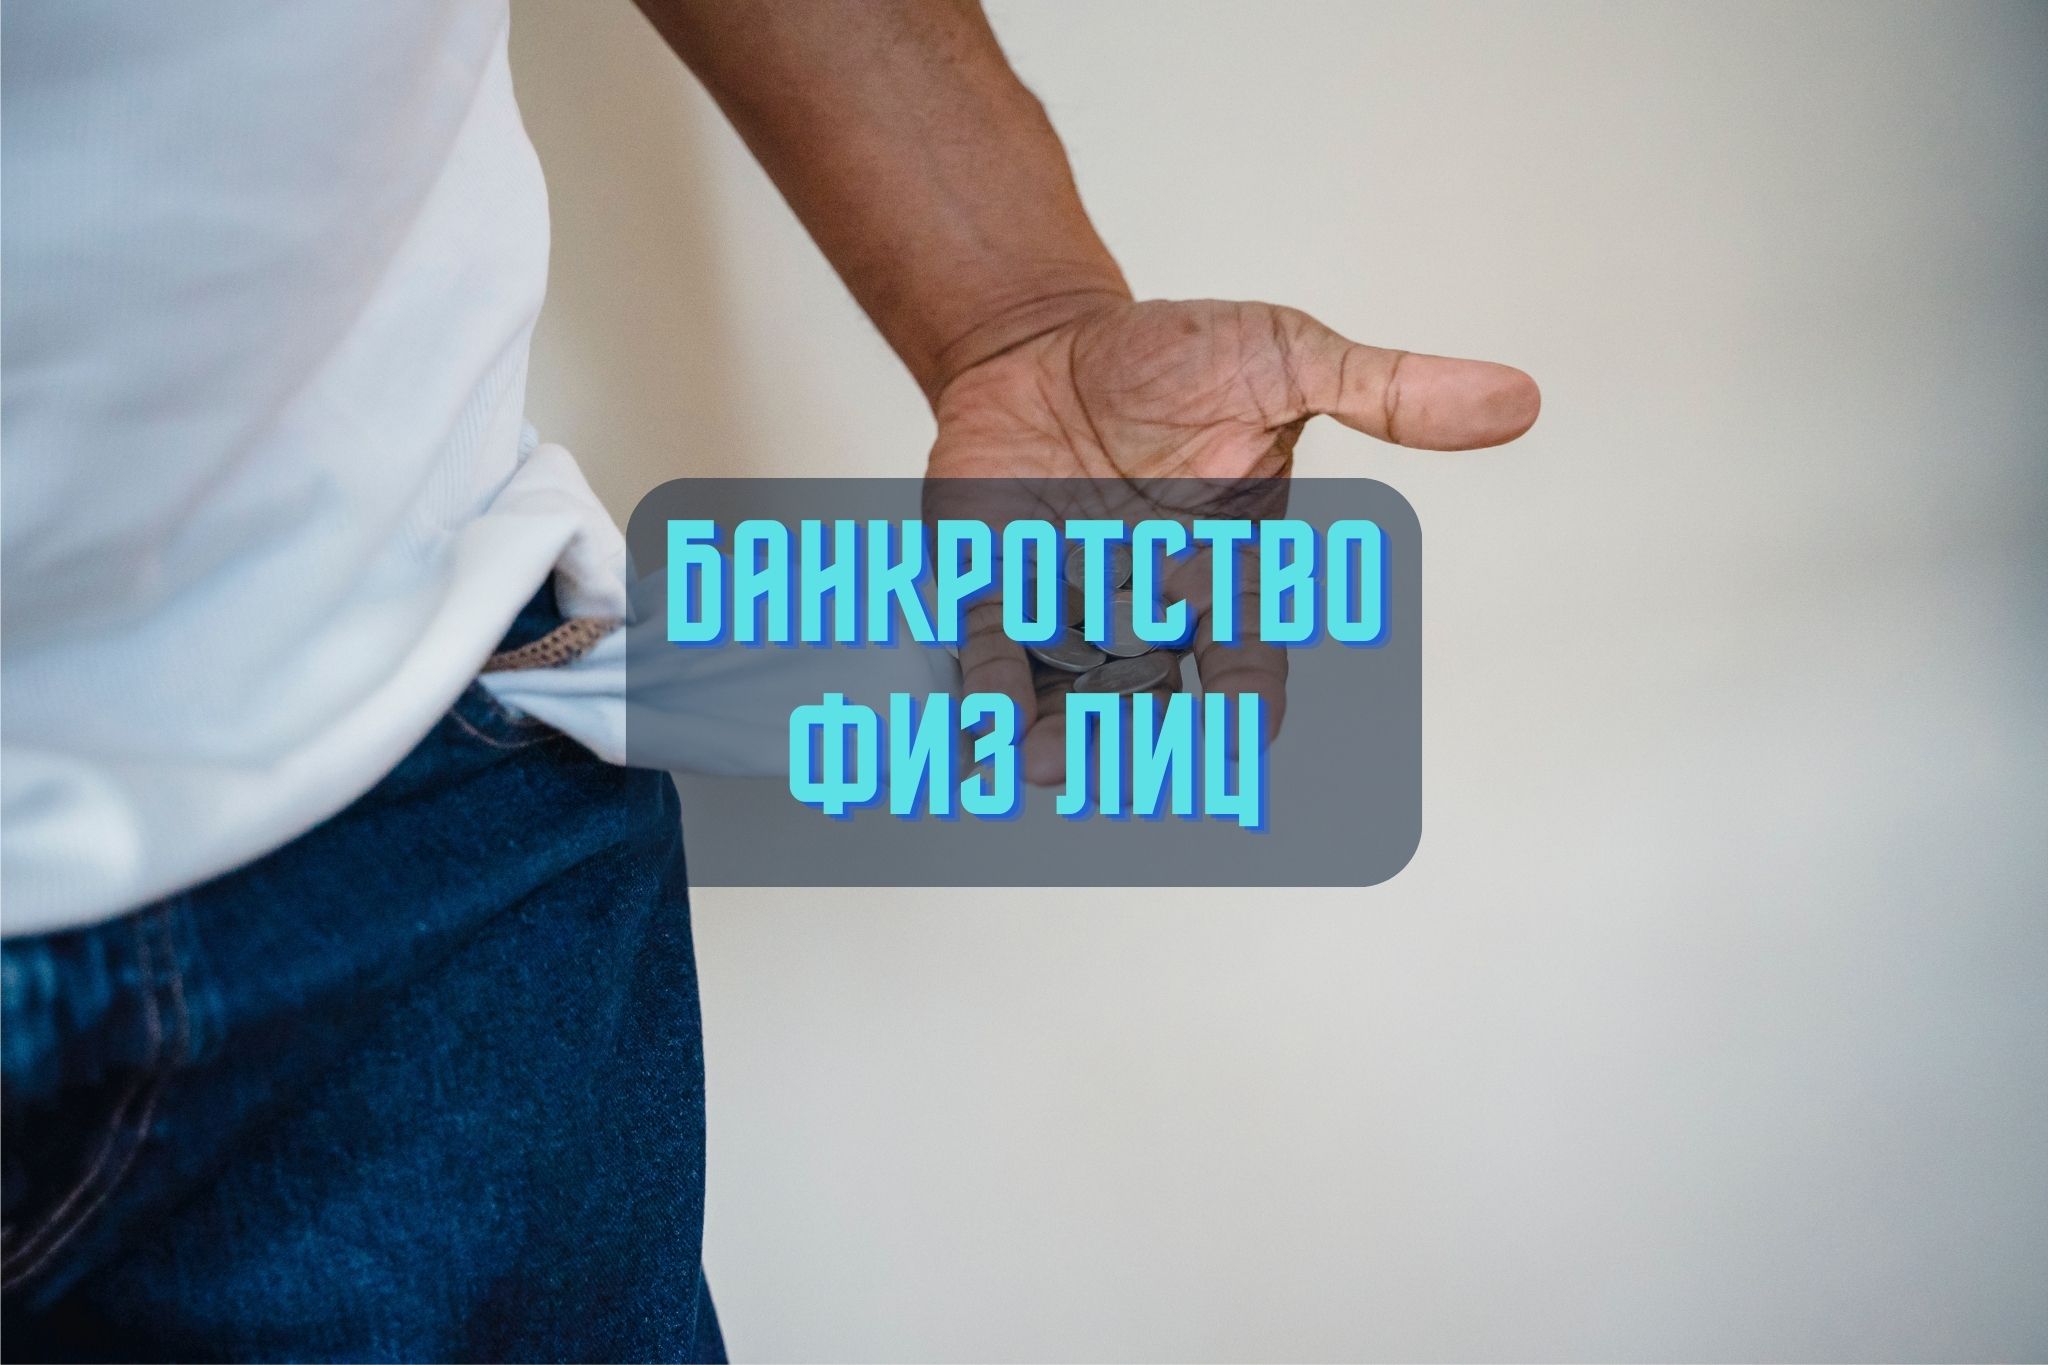 Полное руководство по банкротству физических лиц в Казахстане. Узнайте о последствиях, условиях и законе о банкротстве для физических лиц.